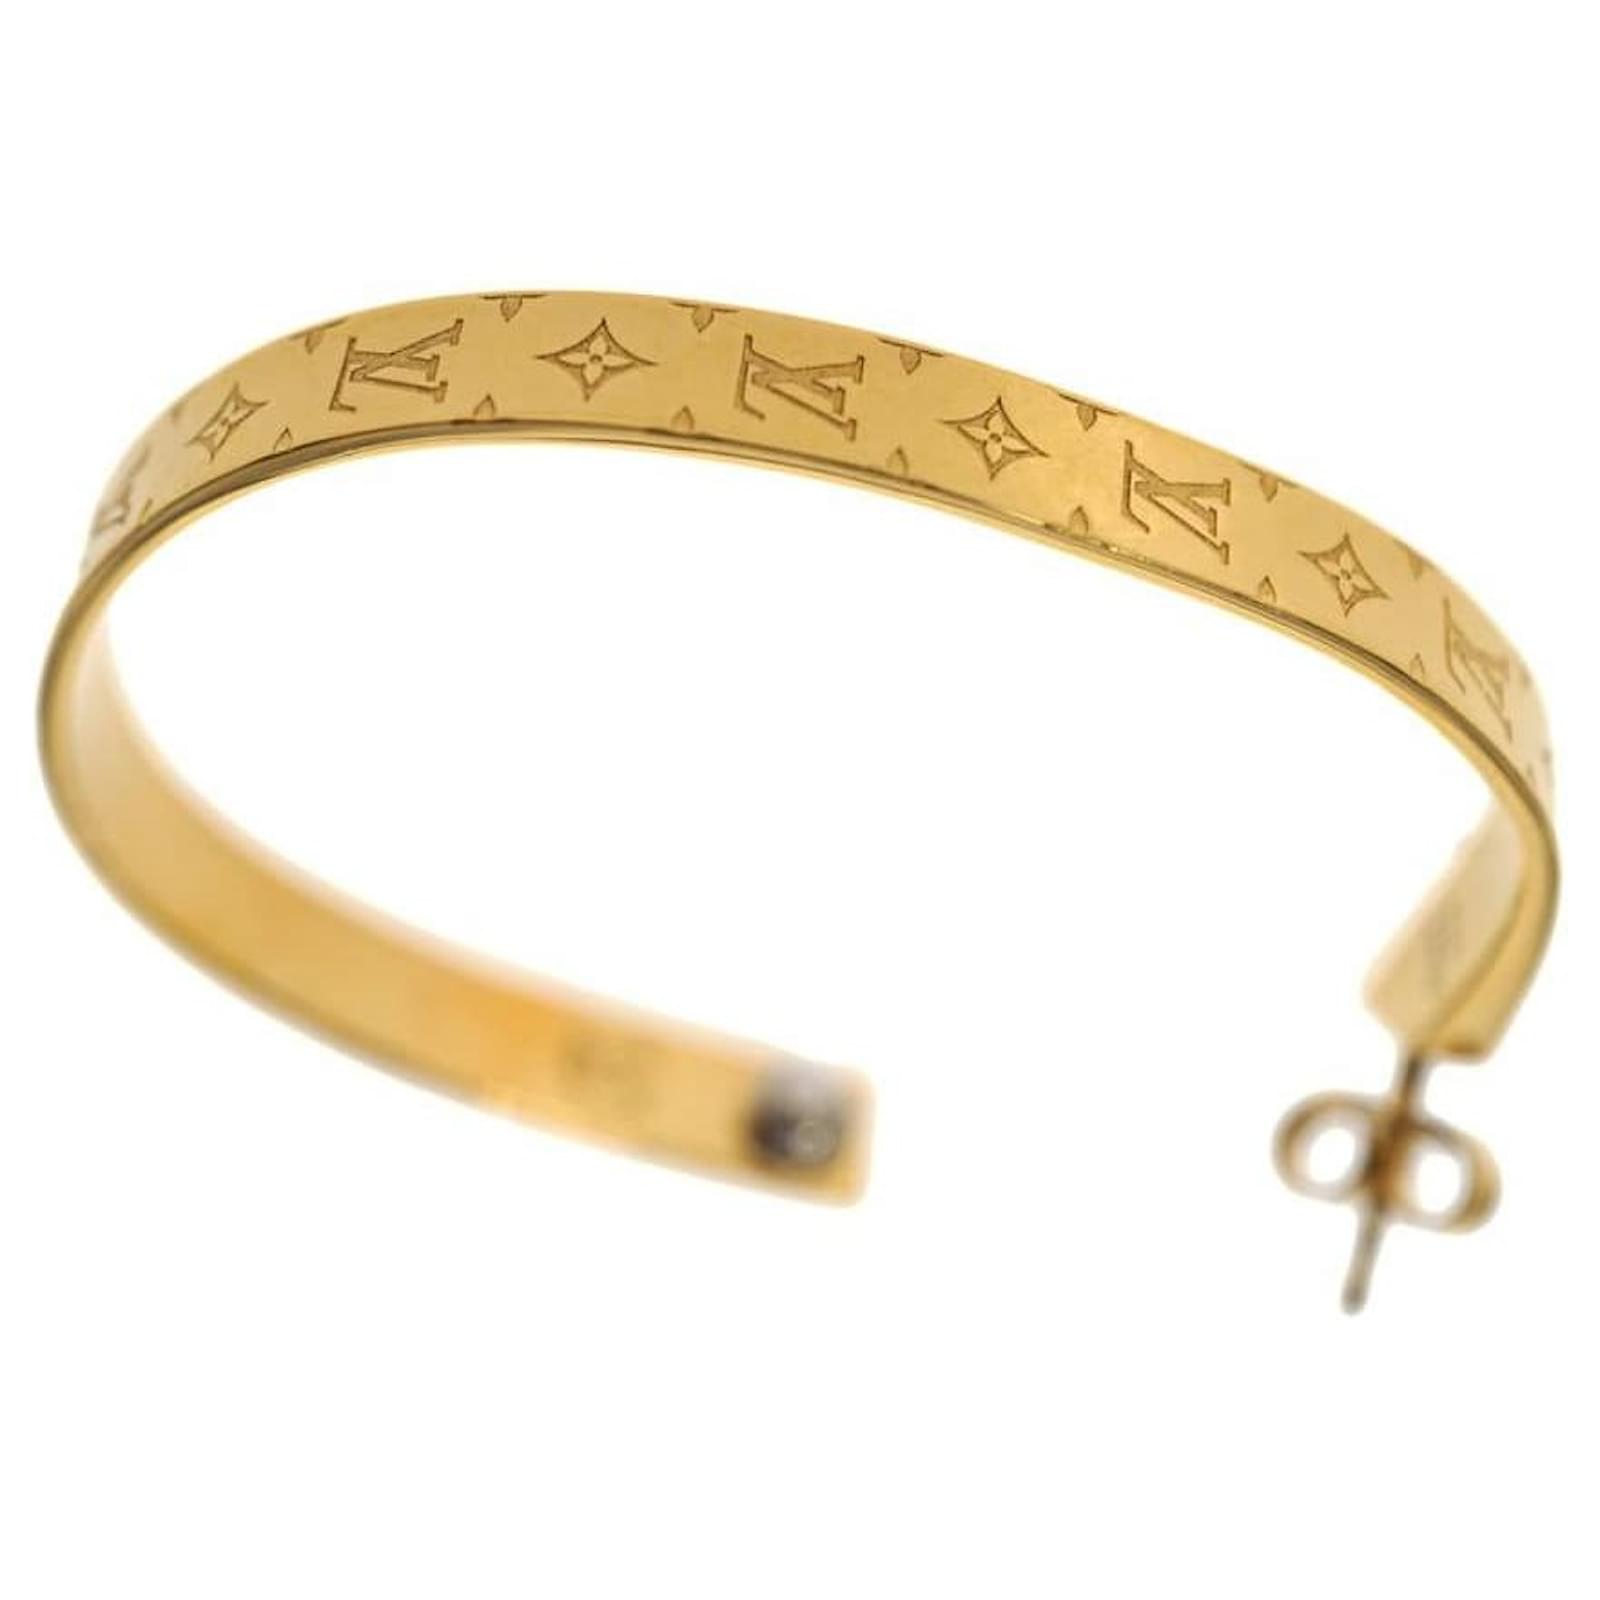 18K Gold Plated Hoop LV earrings  Louis vuitton earrings, Designer jewelry  brands, Luxury jewelry